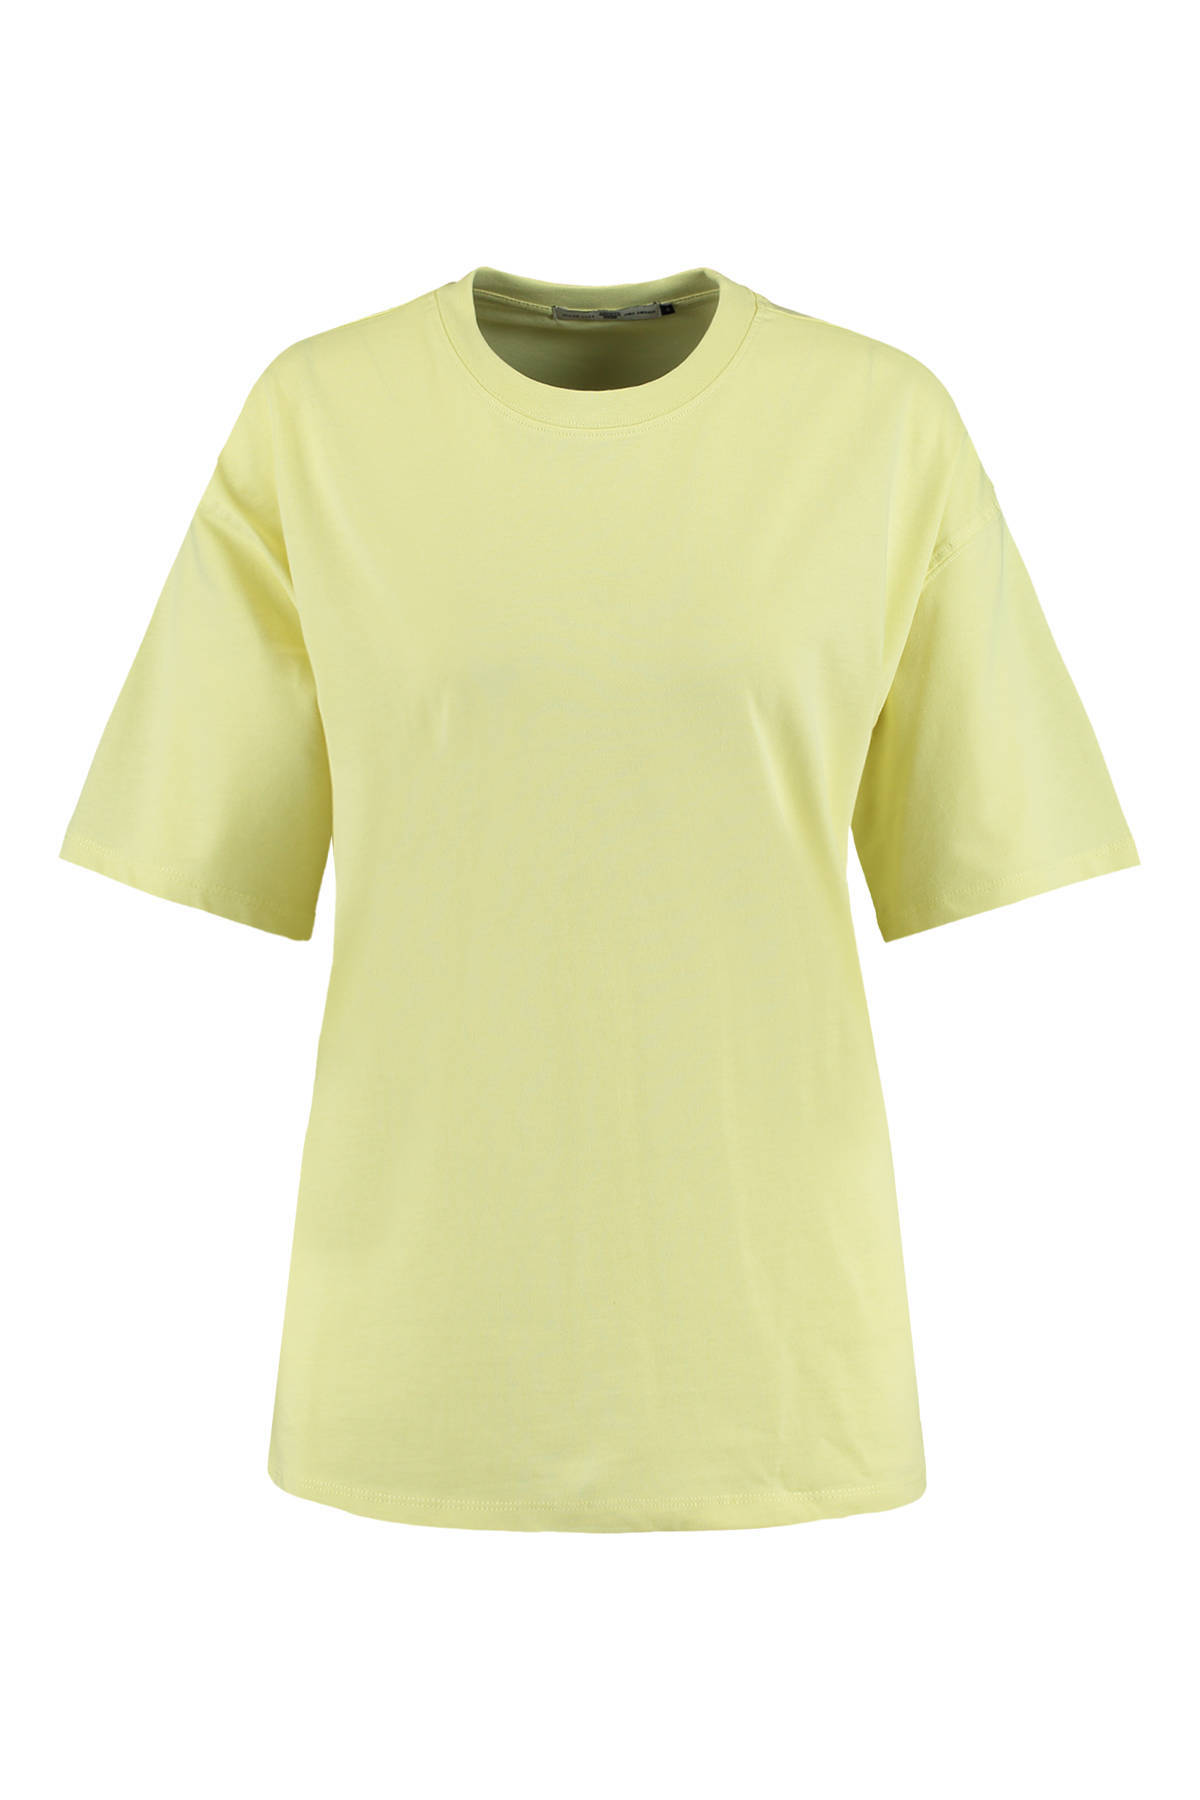 America Today Dames T shirt Oversized Geel online kopen